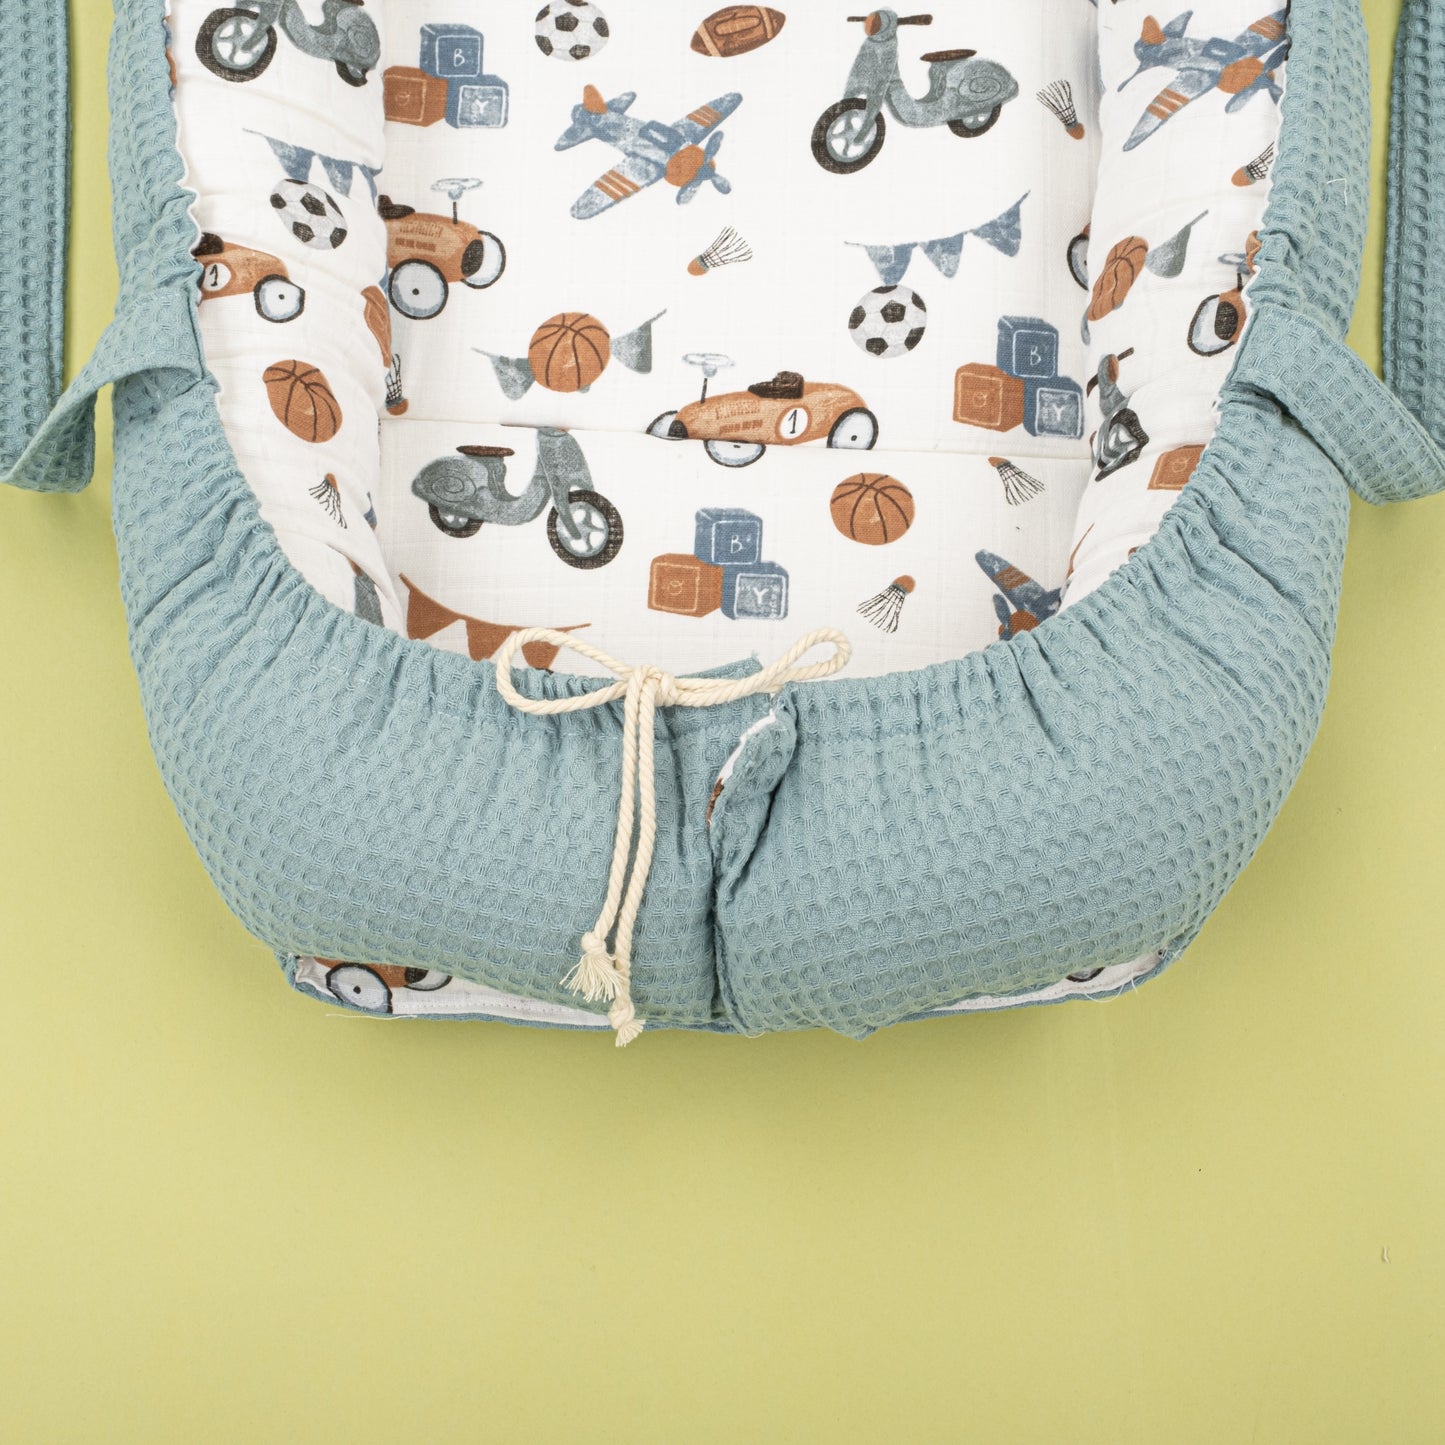 İndirimli Ürün - Çift Taraflı Babynest ve Yastık - Petrol Mavisi Petek - Renkli Araçlar